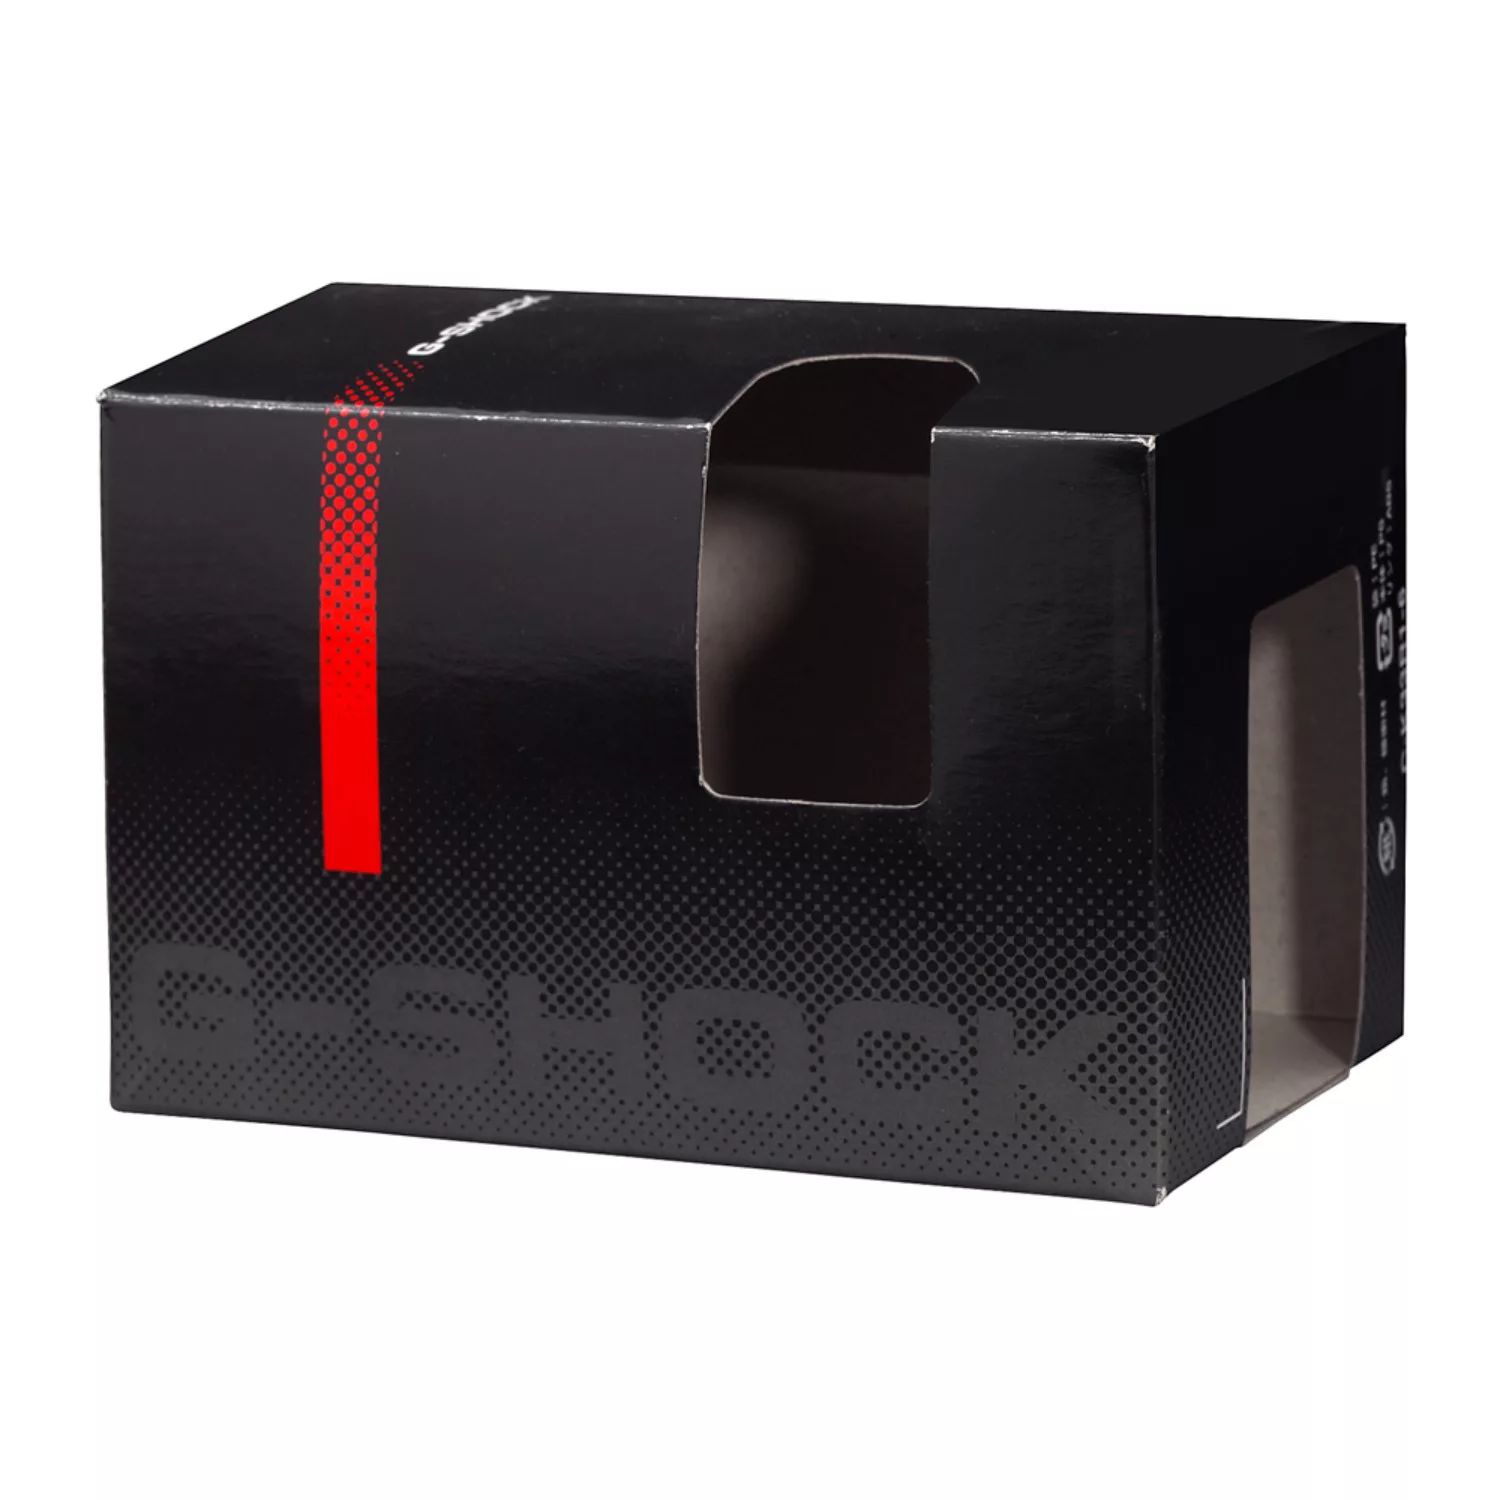 Мужские цифровые часы G-Shock Casio цена и фото